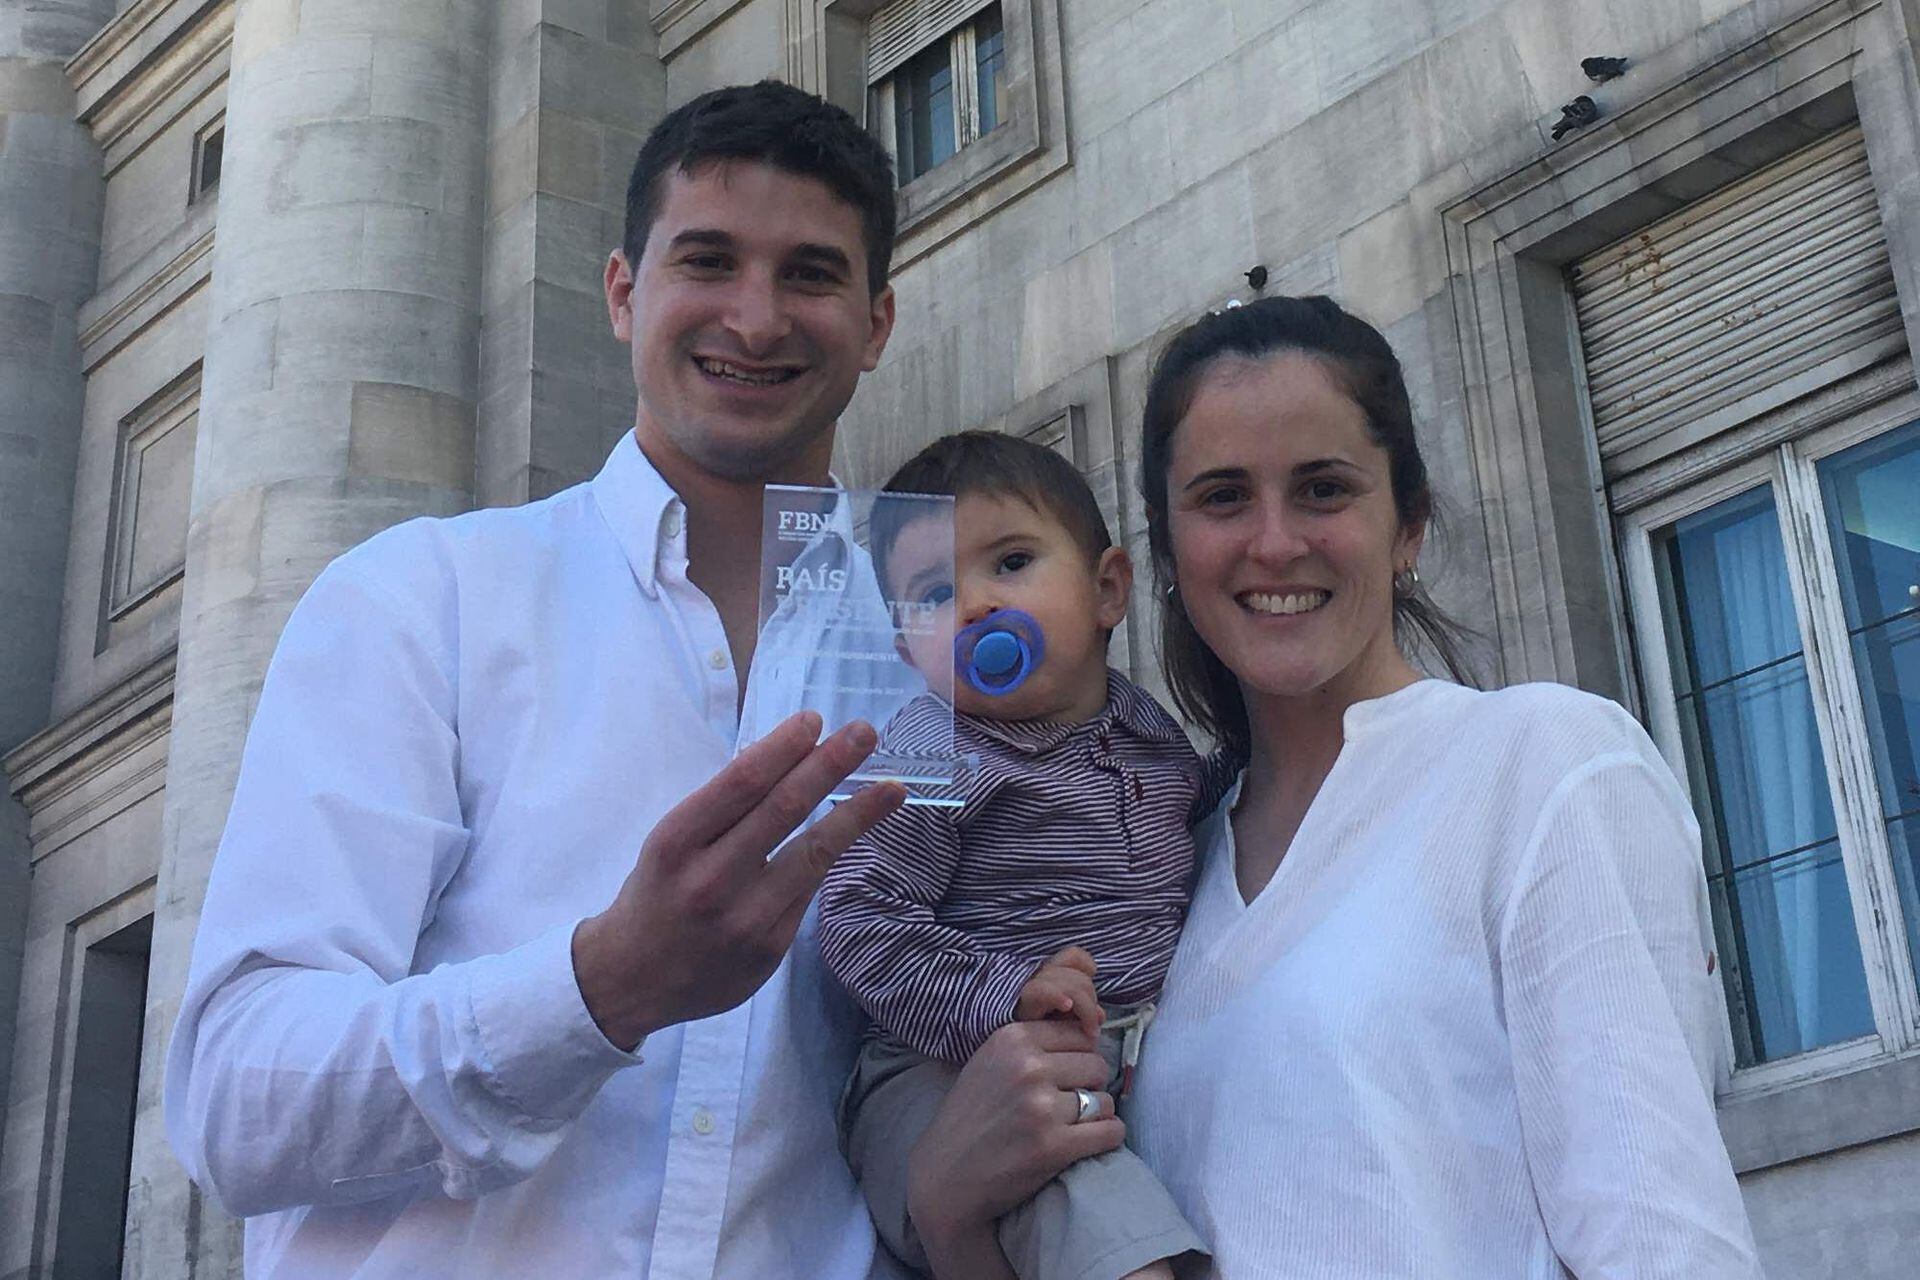 María Soledad y Heriberto junto a su bebé, Agustino, hace unos días en la entrega de los premios "País Presente 2019", donde recibieron una distinción